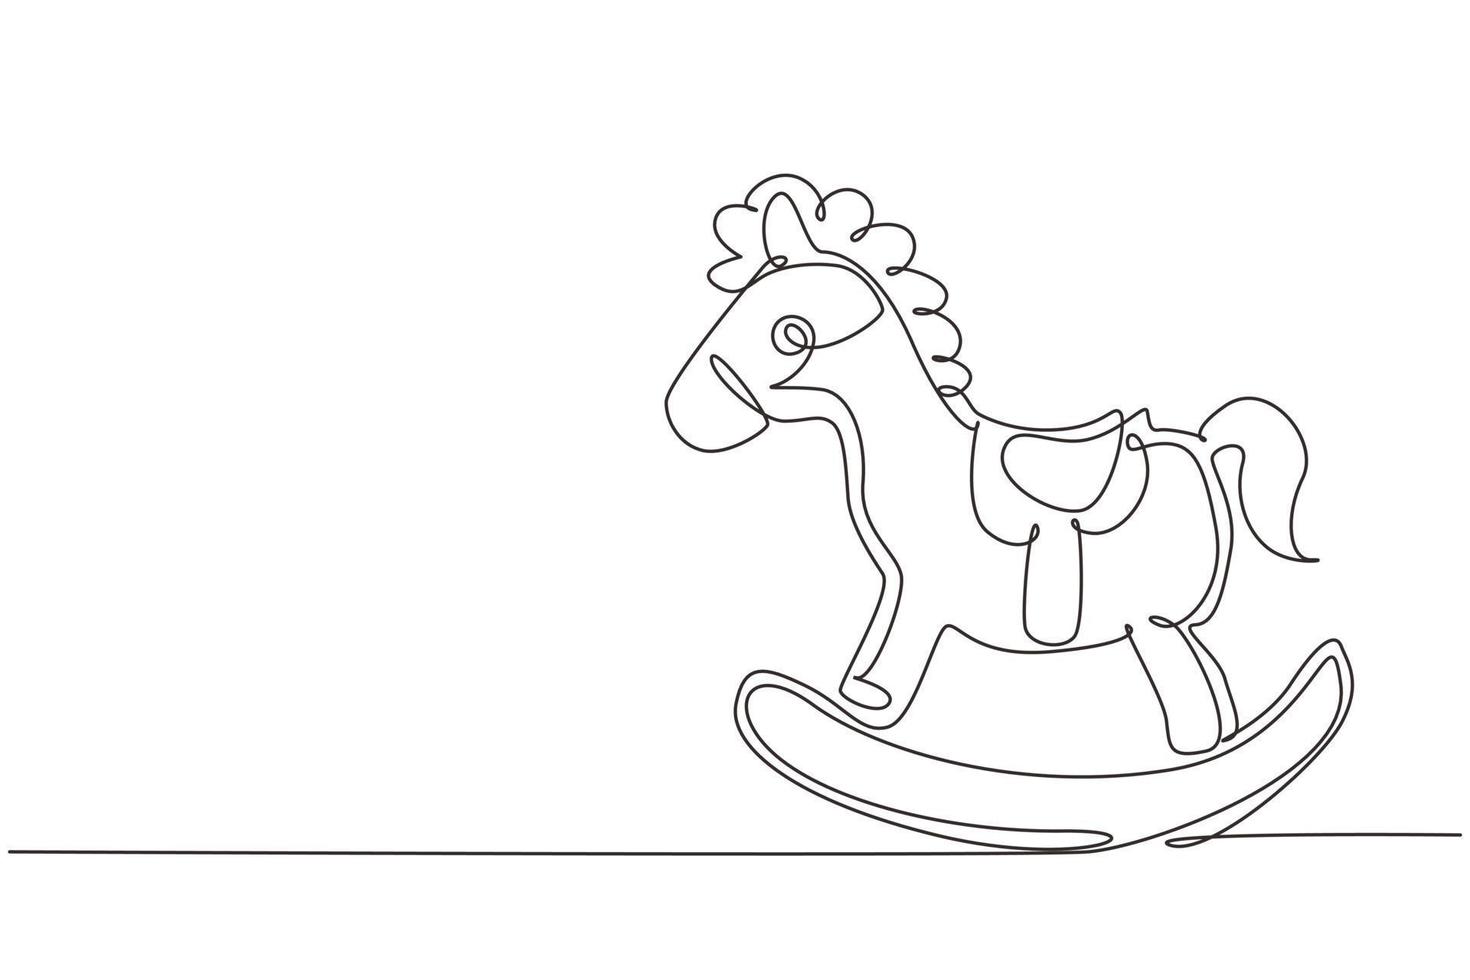 dessin au trait continu simple chaise de cheval à bascule en bois enfants. cheval à bascule en bois fait maison classique pour les enfants. jouet de cheval vintage pour enfants. dynamique une ligne dessiner illustration vectorielle de conception graphique vecteur